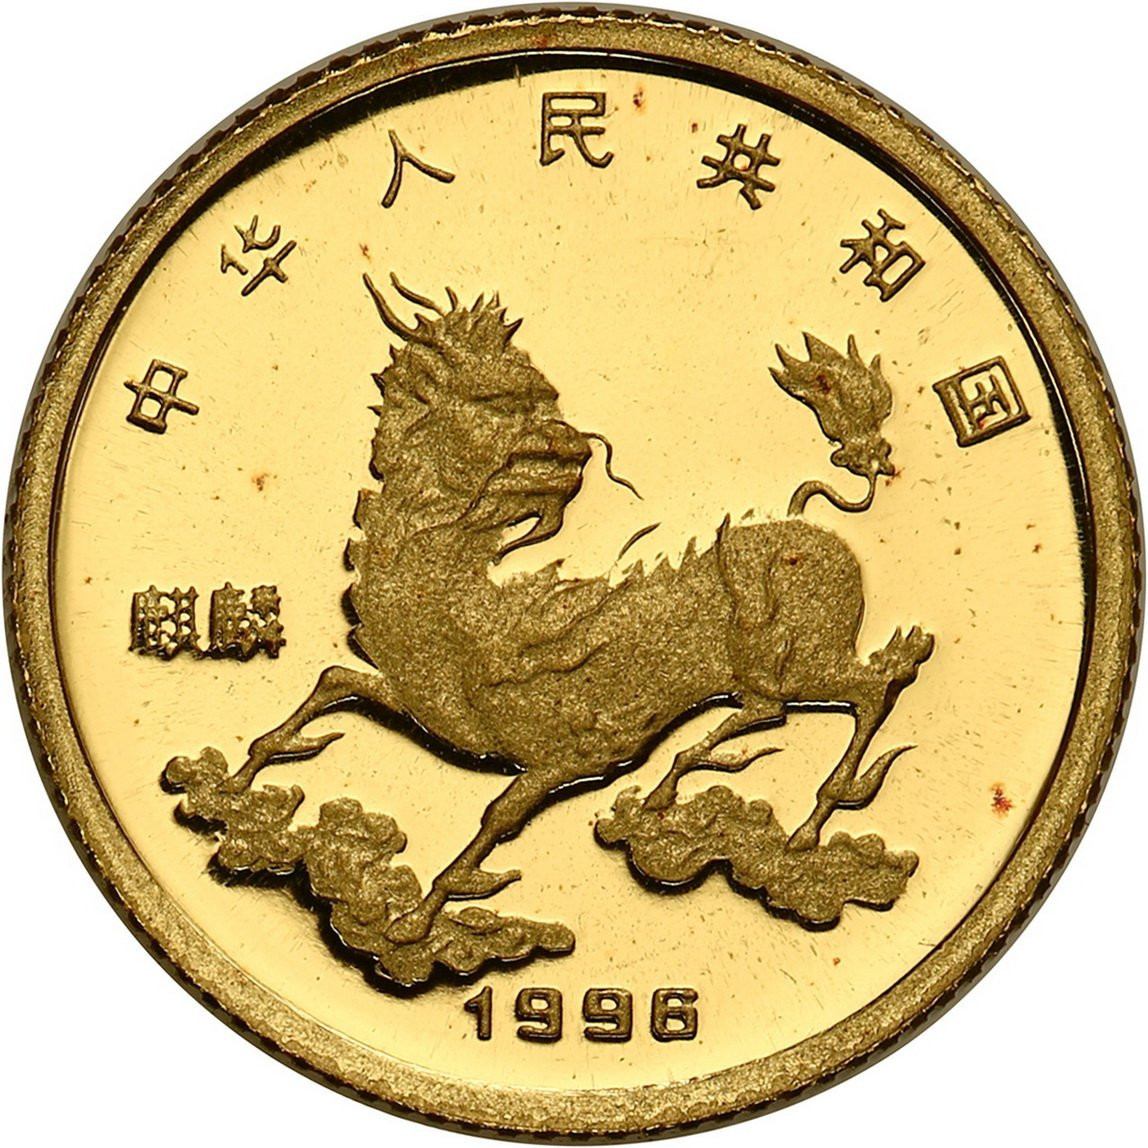 Chiny. 5 Yuan 1995 Jednorożec - 1/20 uncji złota